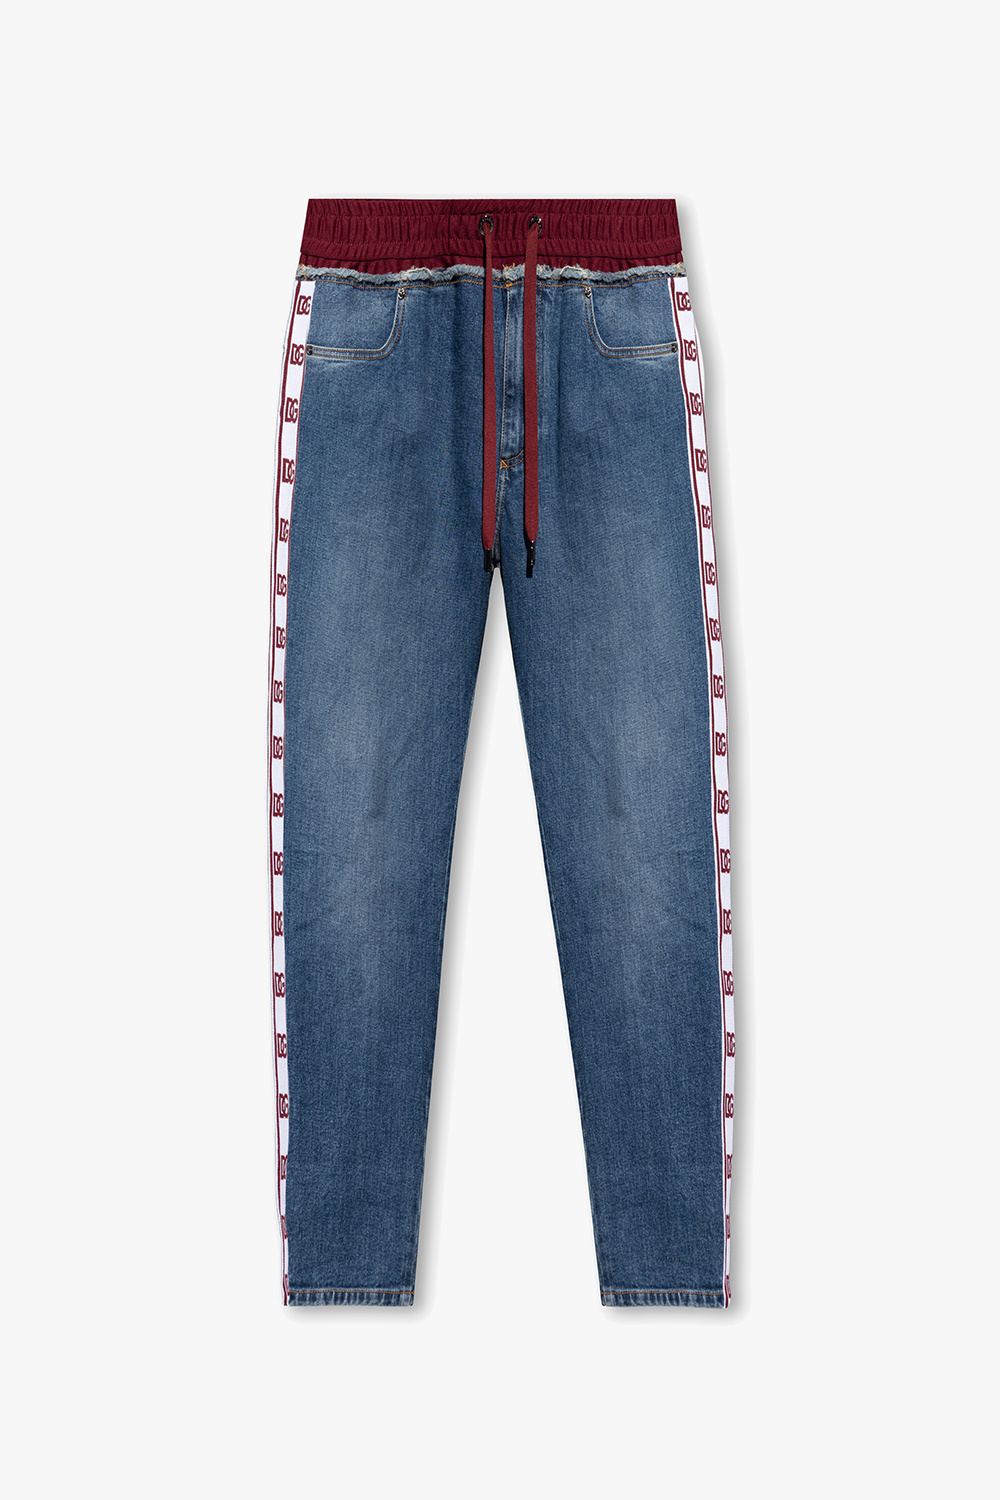 Dolce & Gabbana Side-stripe jeans